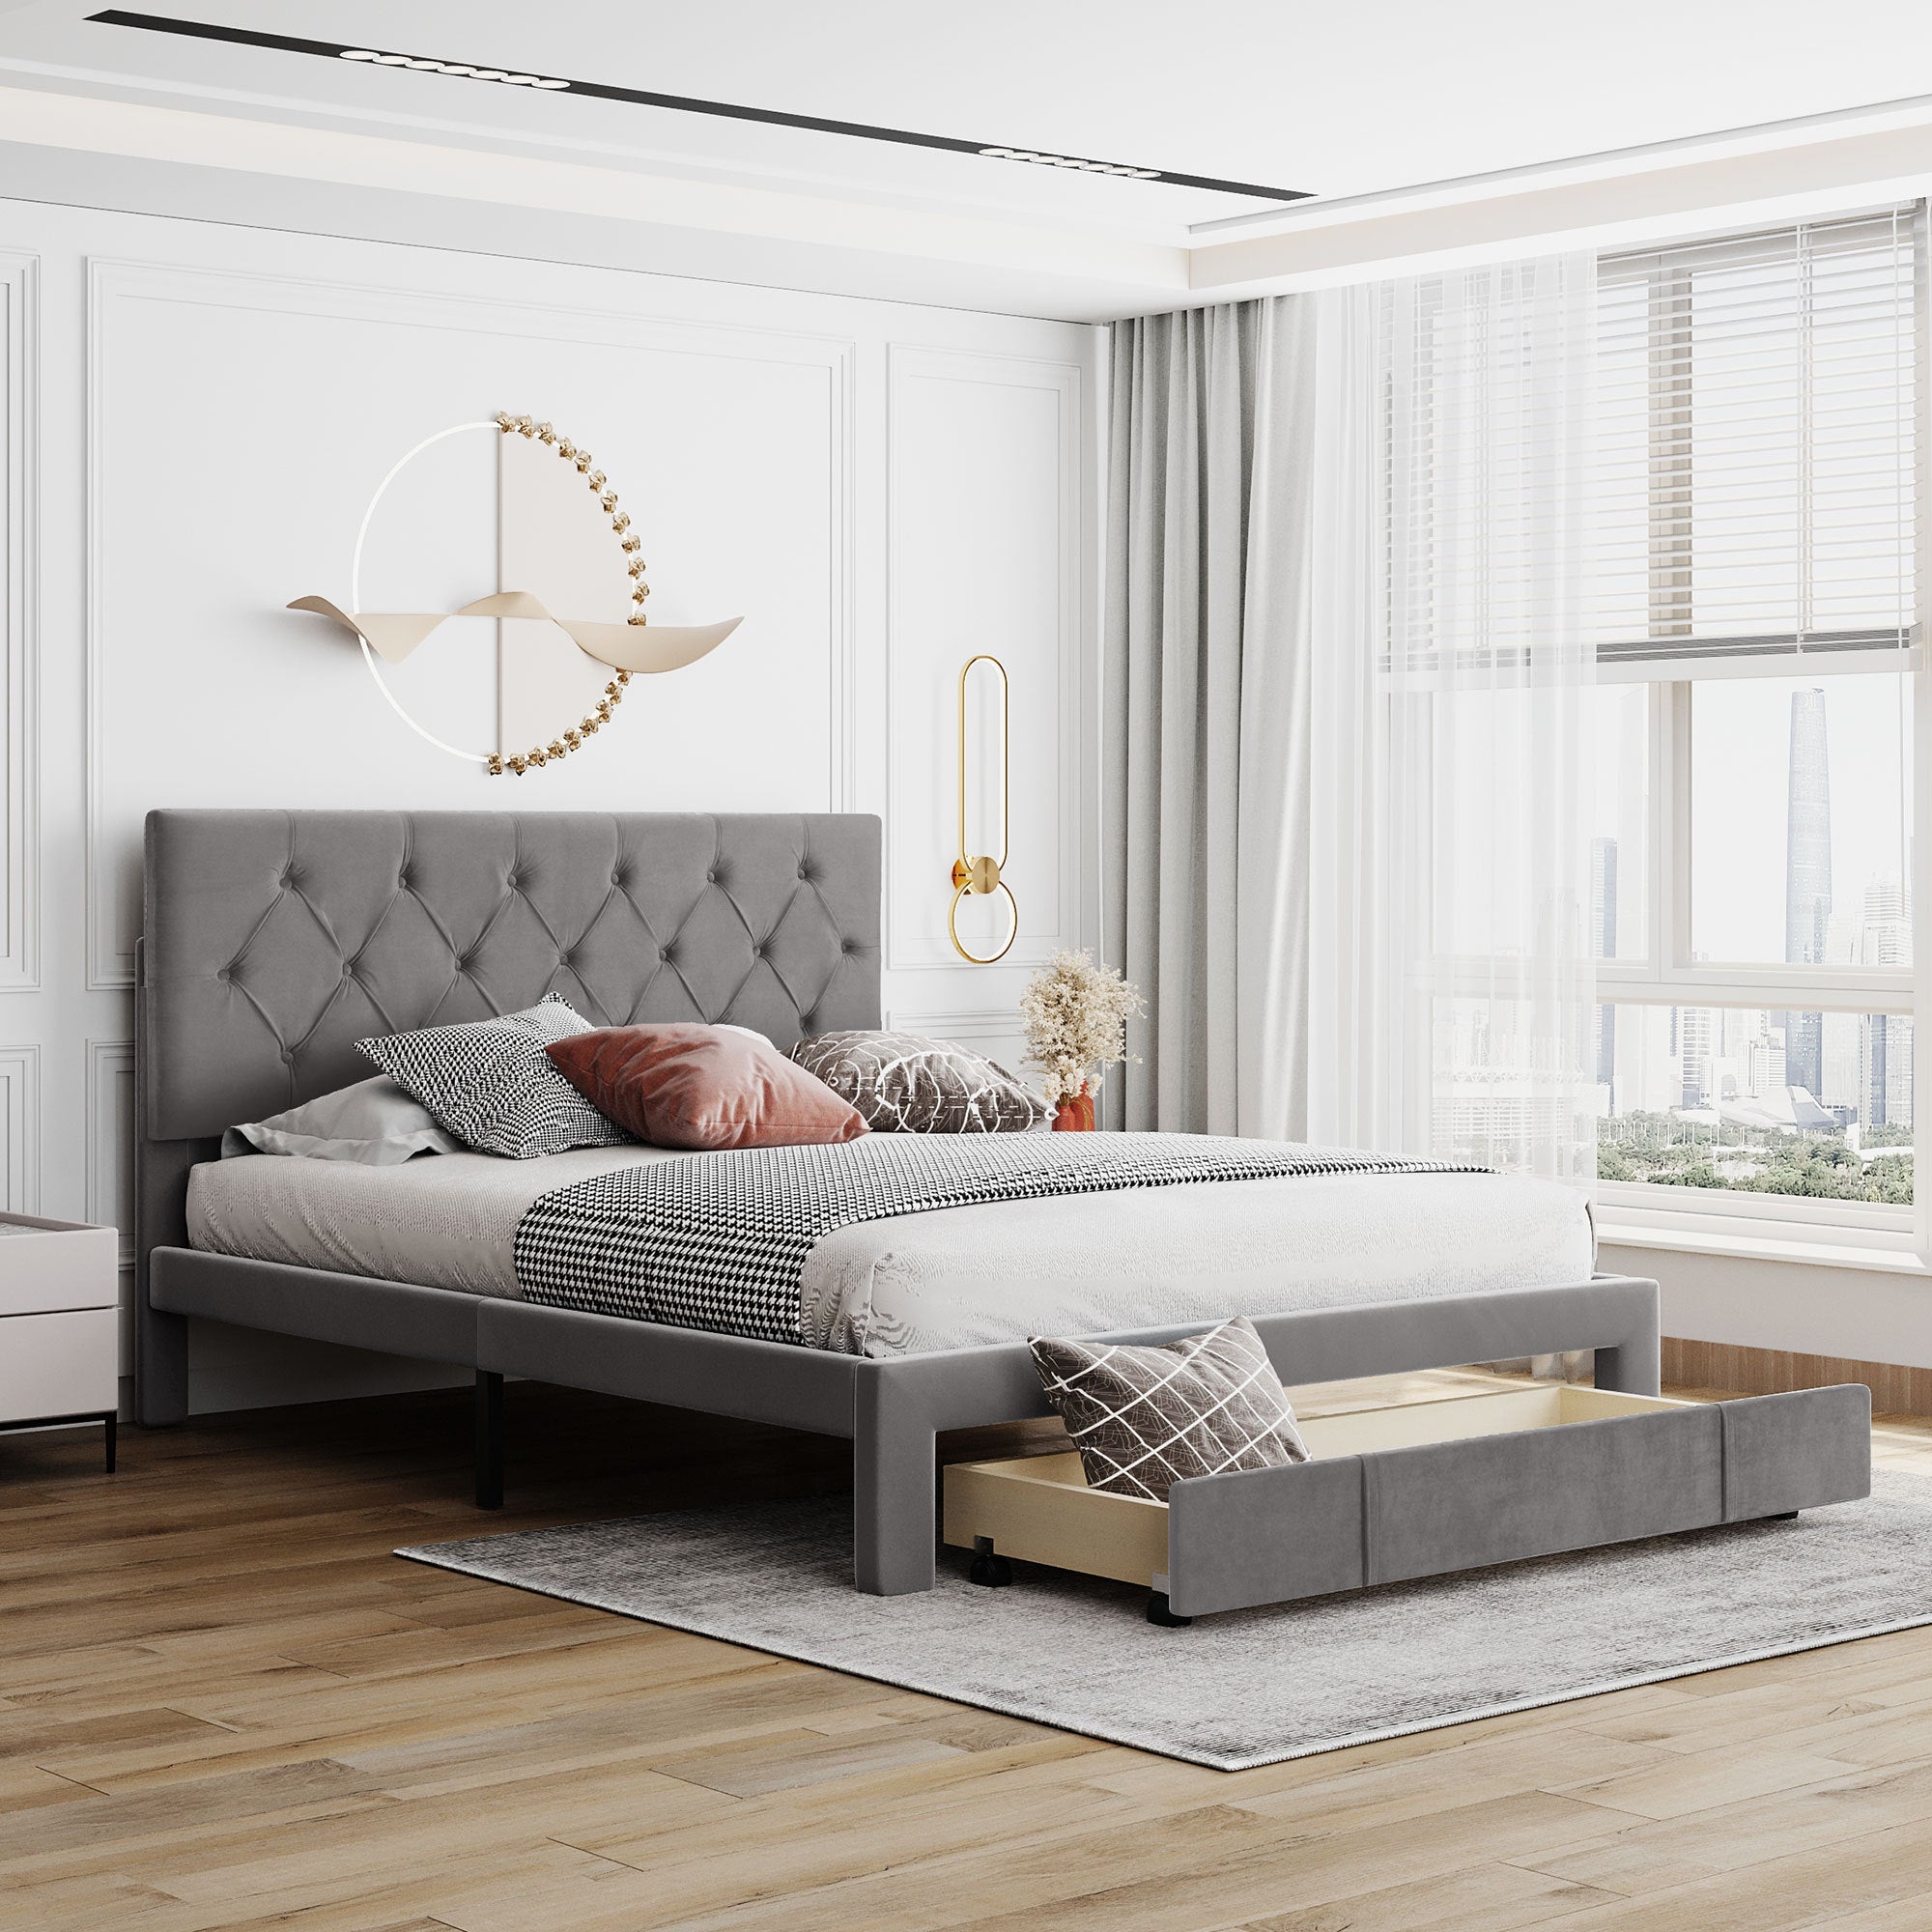 Queen-Size-Storage-Bed-Velvet-Upholstered-Platform-Bed-with-a-Big-Drawer-Grey-Beds-&-Bed-Frames